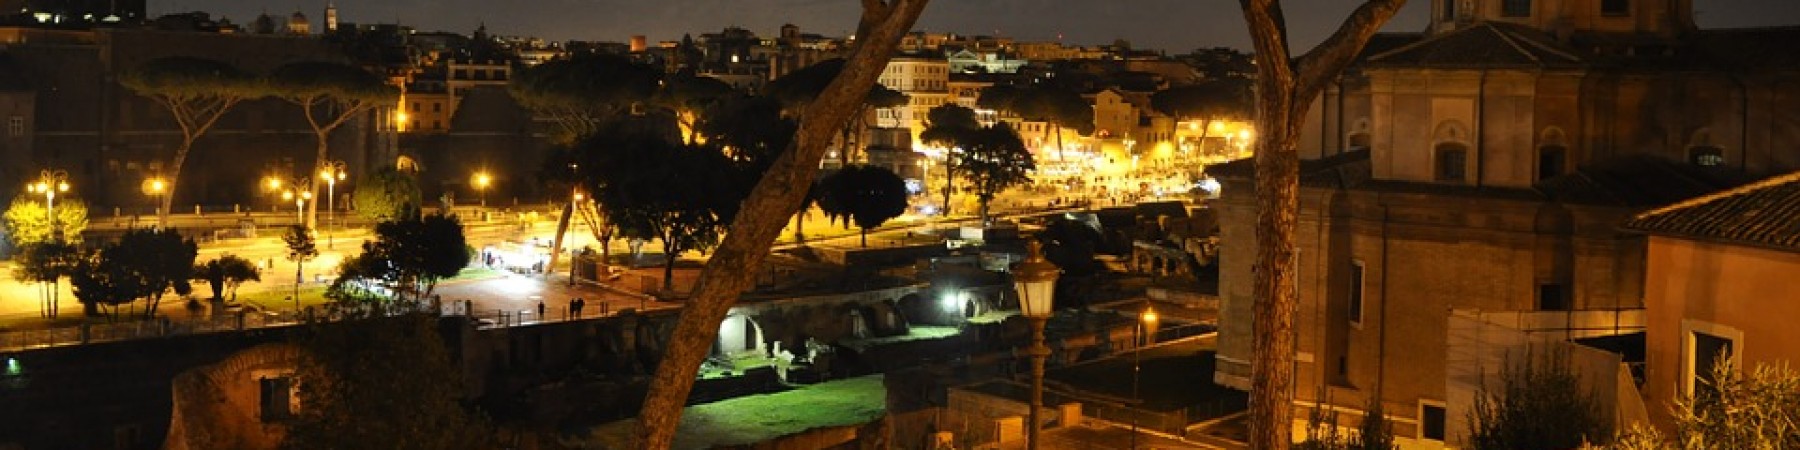 TOUR PRIVE - les plus belles places de Rome le soir